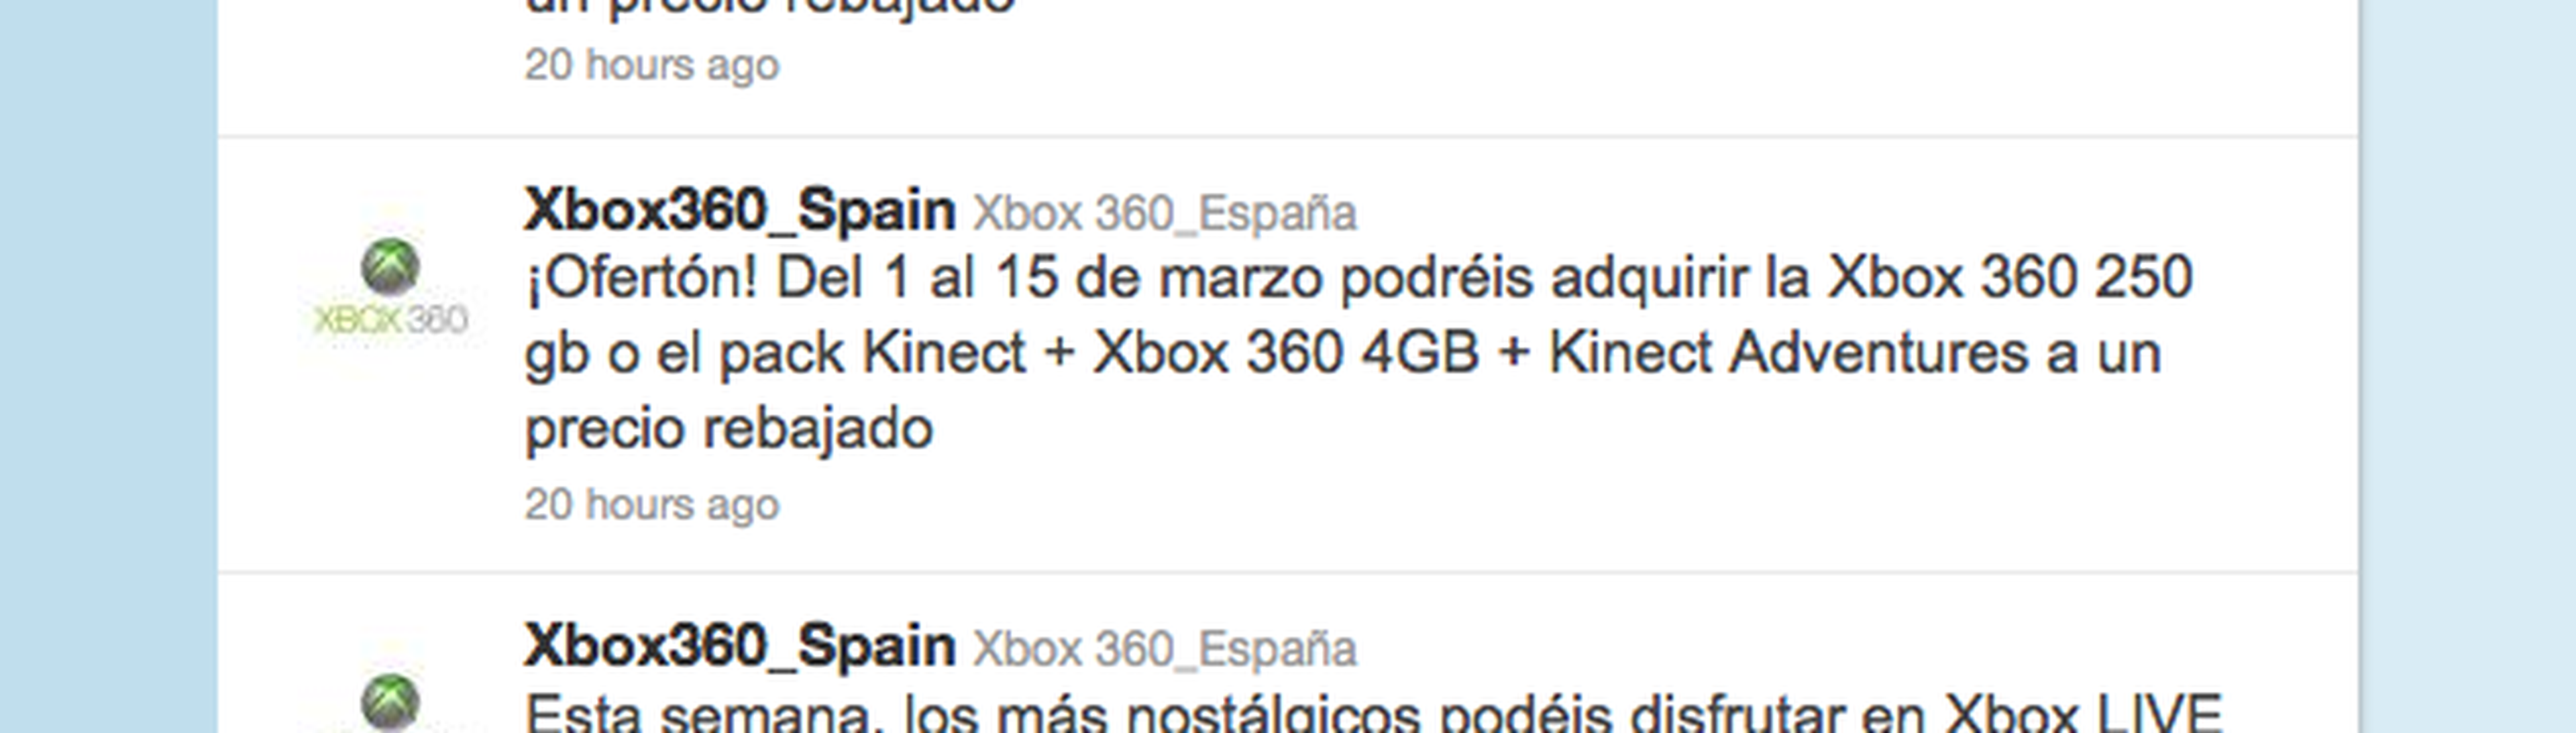 X360 baja el precio y PS3 en la aduana